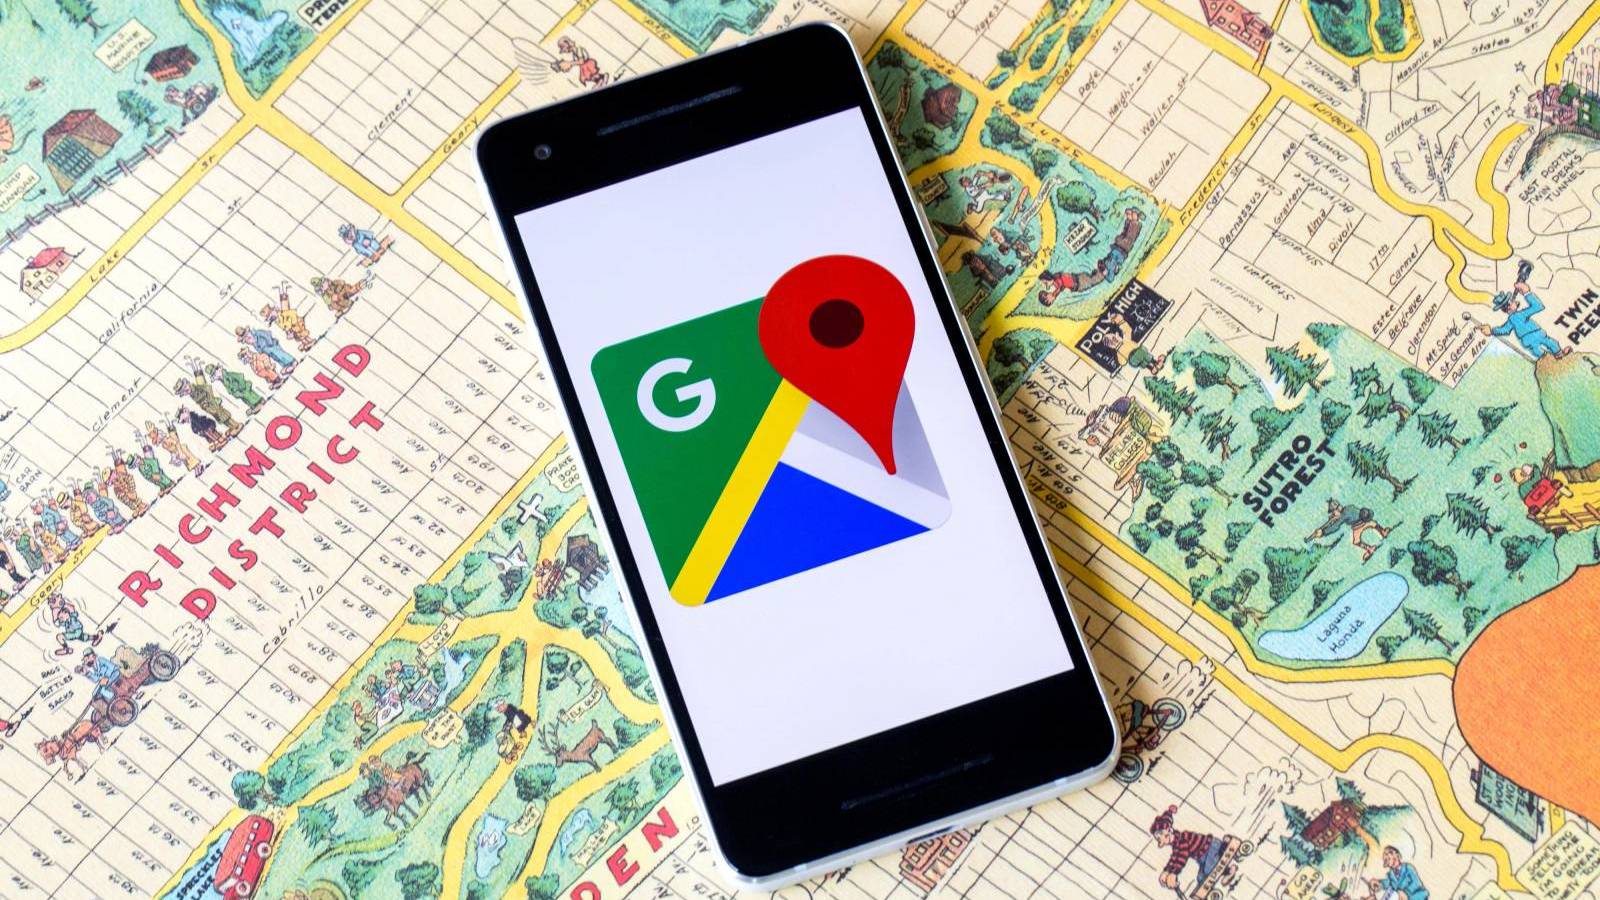 Google Maps Update este Oferit cu Aceste Noutati in Telefoane si Tablete